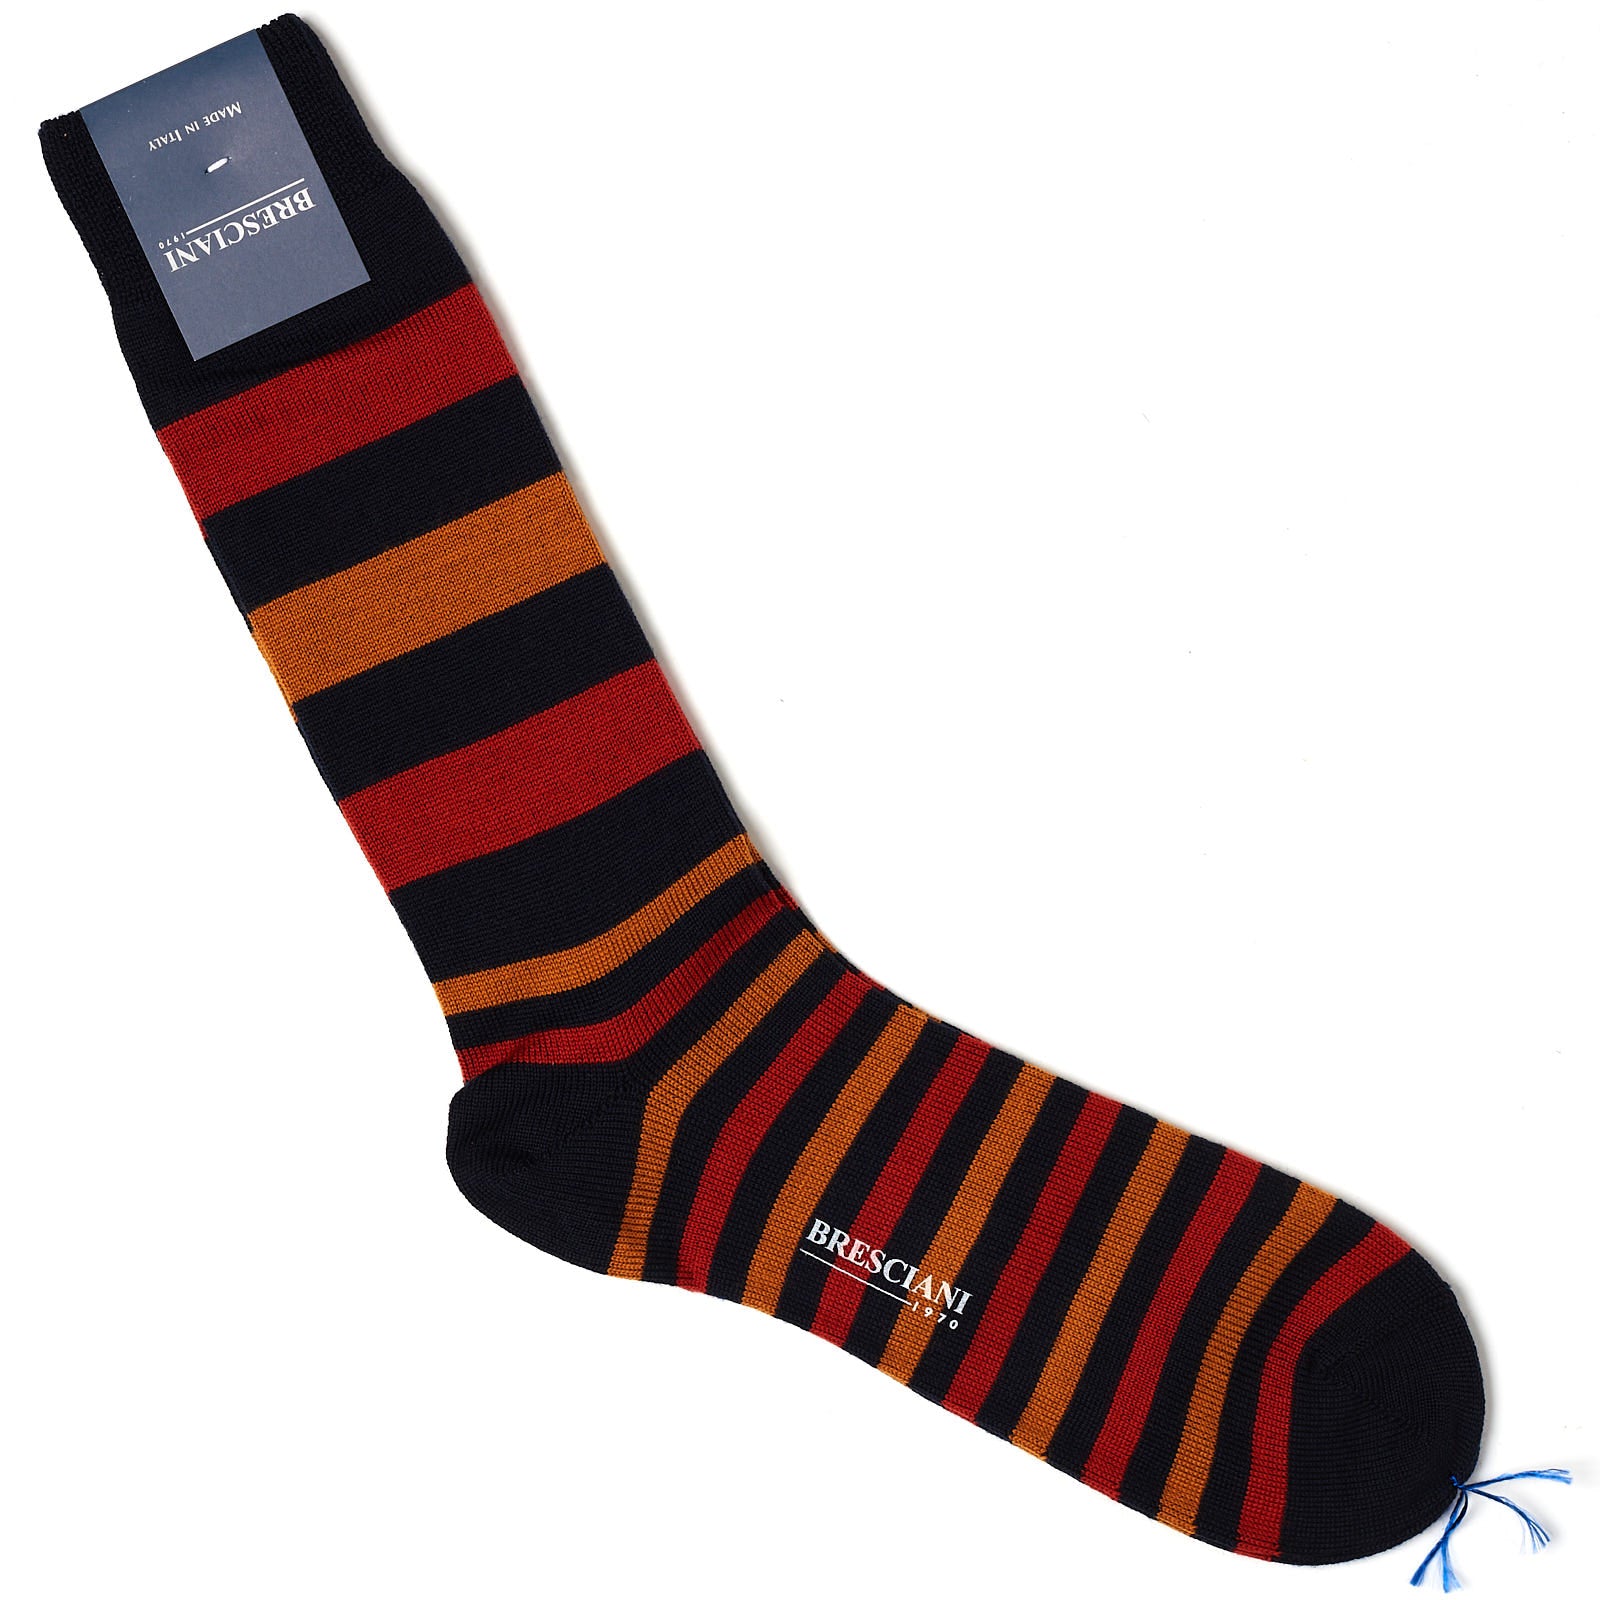 BRESCIANI Wool Balanced Striped Mid Calf Length Socks M-L BRESCIANI